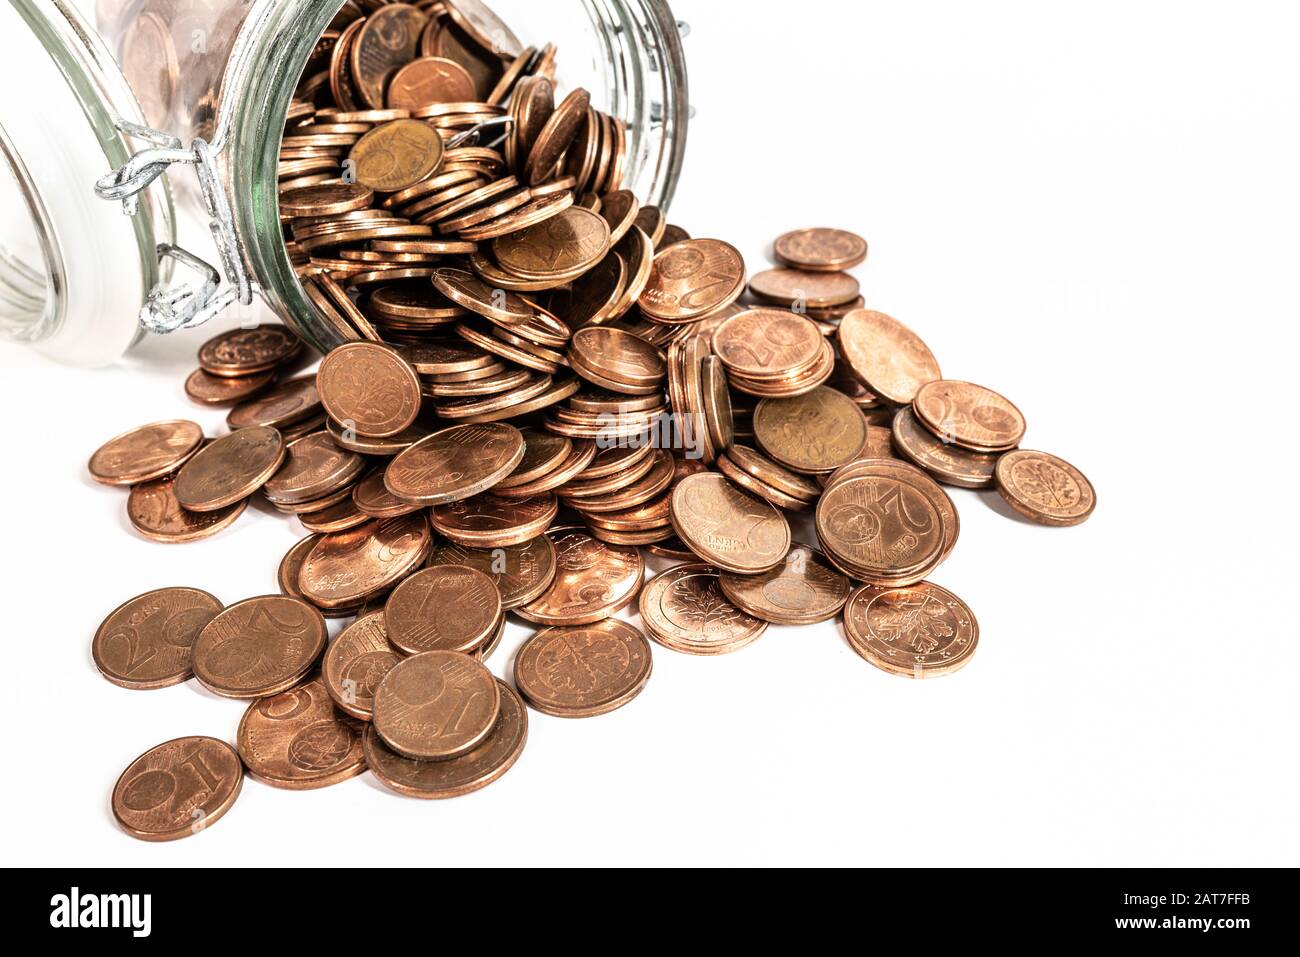 piccole monete euro cent cambio che si riversano dal vaso di vetro isolato su sfondo bianco, ritiro del concetto di monete a bassa denominazione Foto Stock